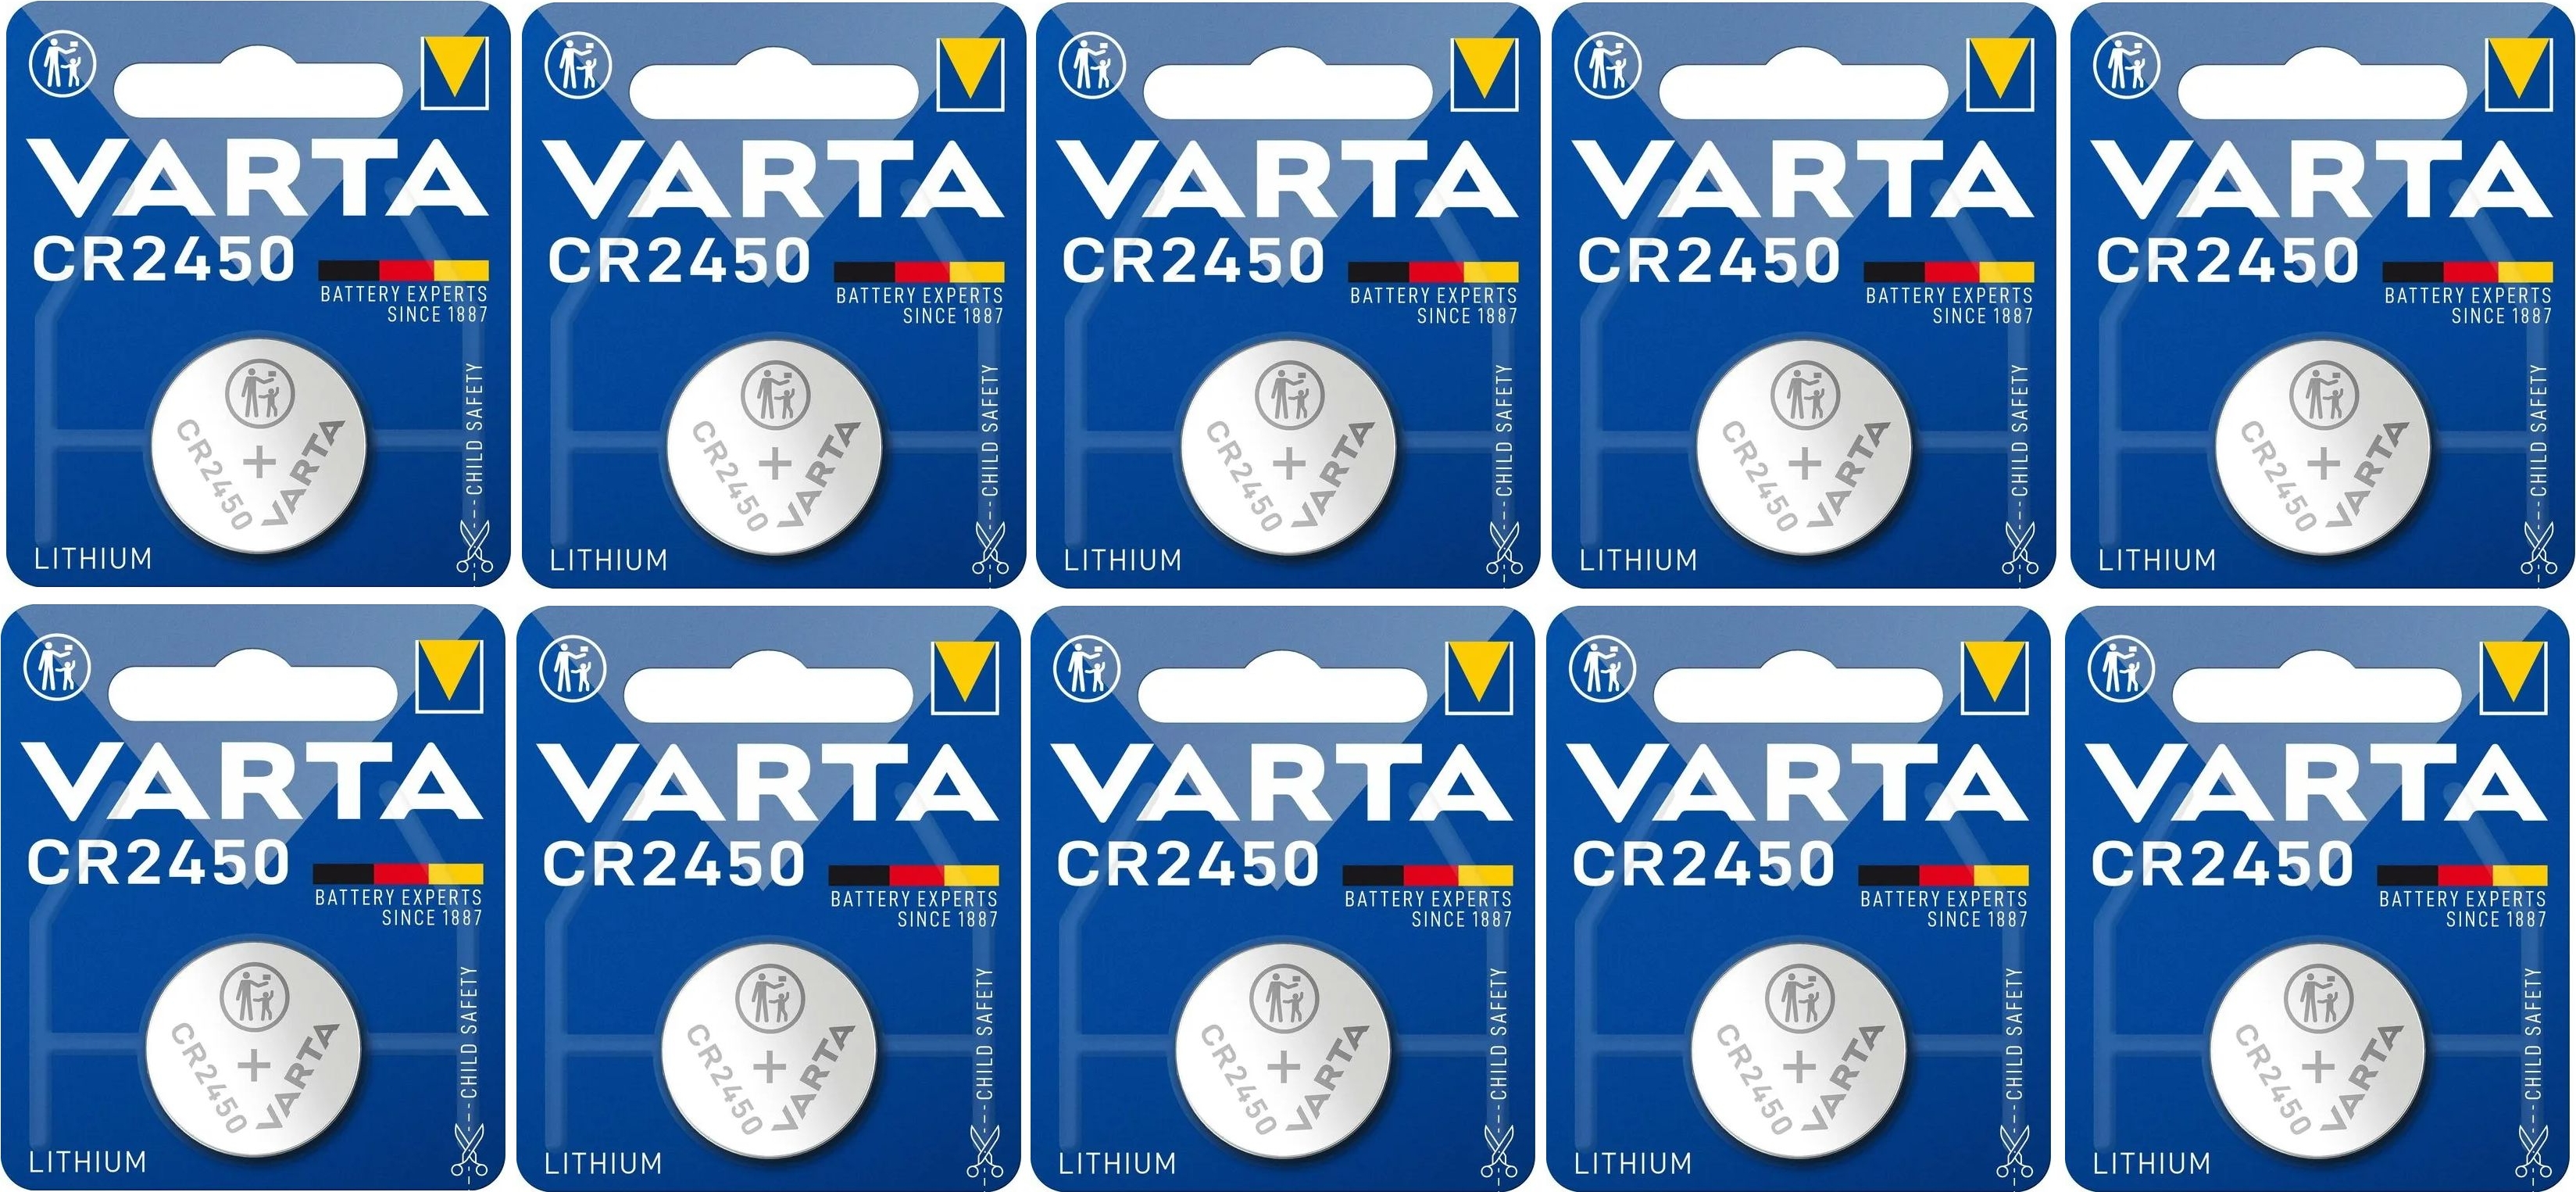 saarbatt Online-Shop - Varta CR2450, CR 2450, DL 2450, DL2450